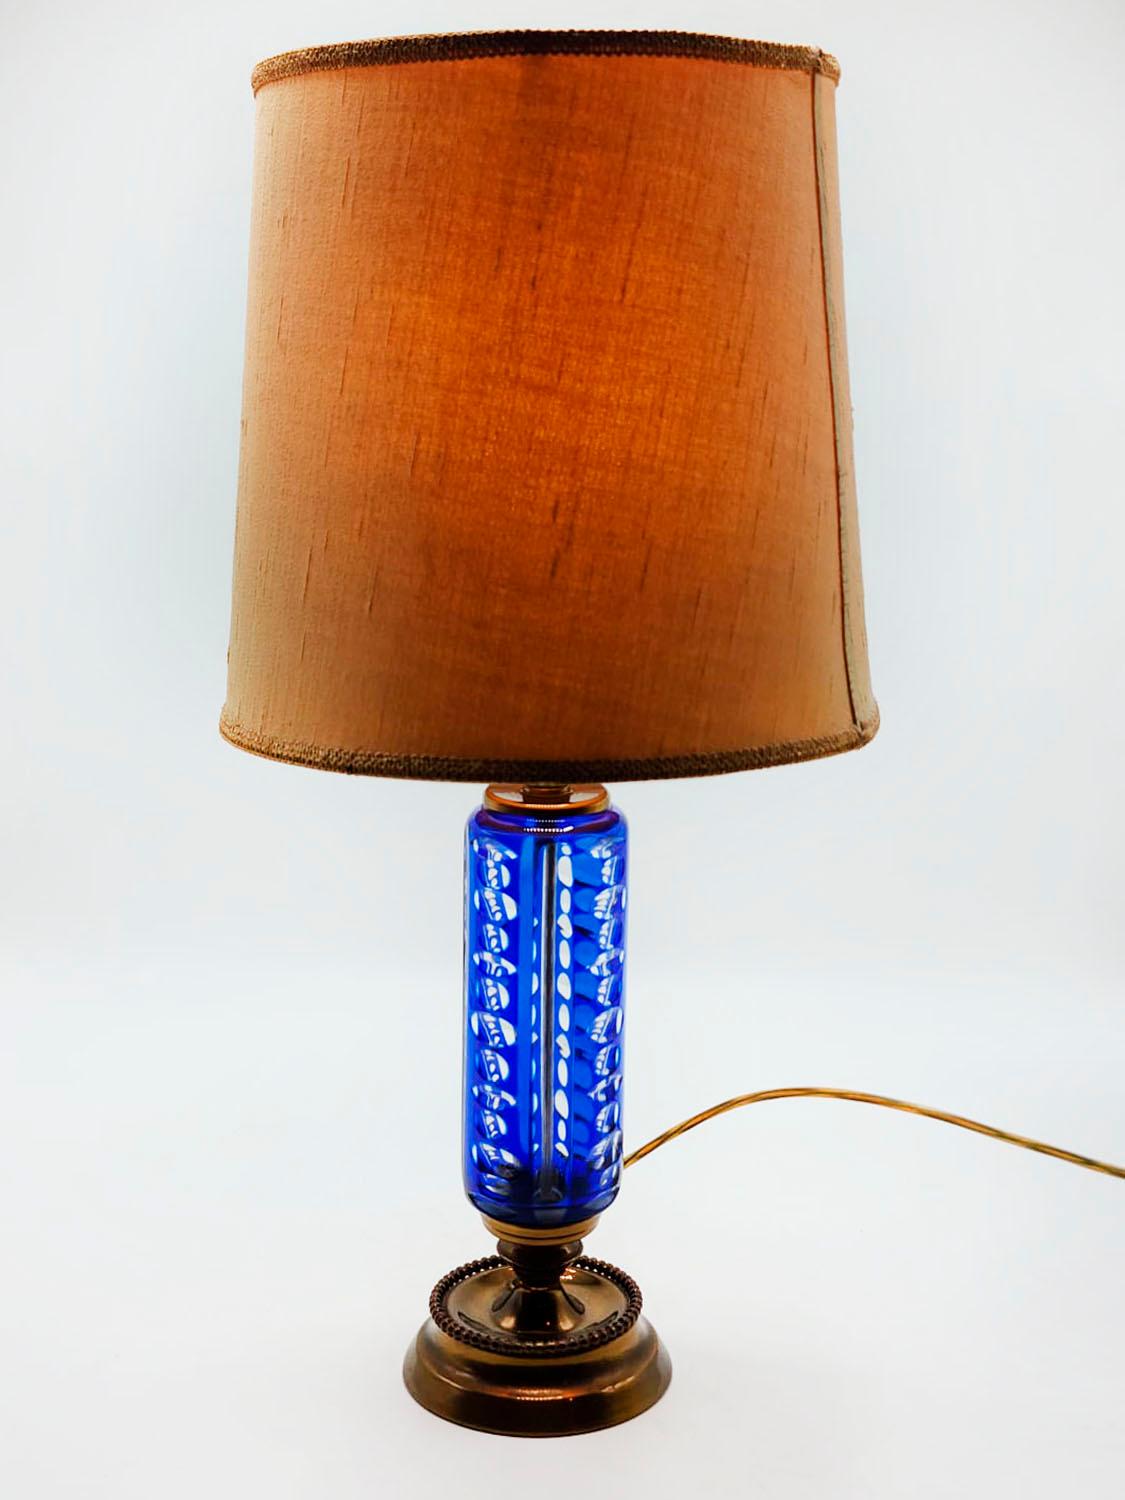 Lampe de table en verre taillé bleu et bronze du 20e siècle

Lampe de table art déco en verre taillé de couleur bleue et base en bronze, datant du milieu du 20e siècle, parfaite pour une décoration dans un style maximaliste classique.

Mesures